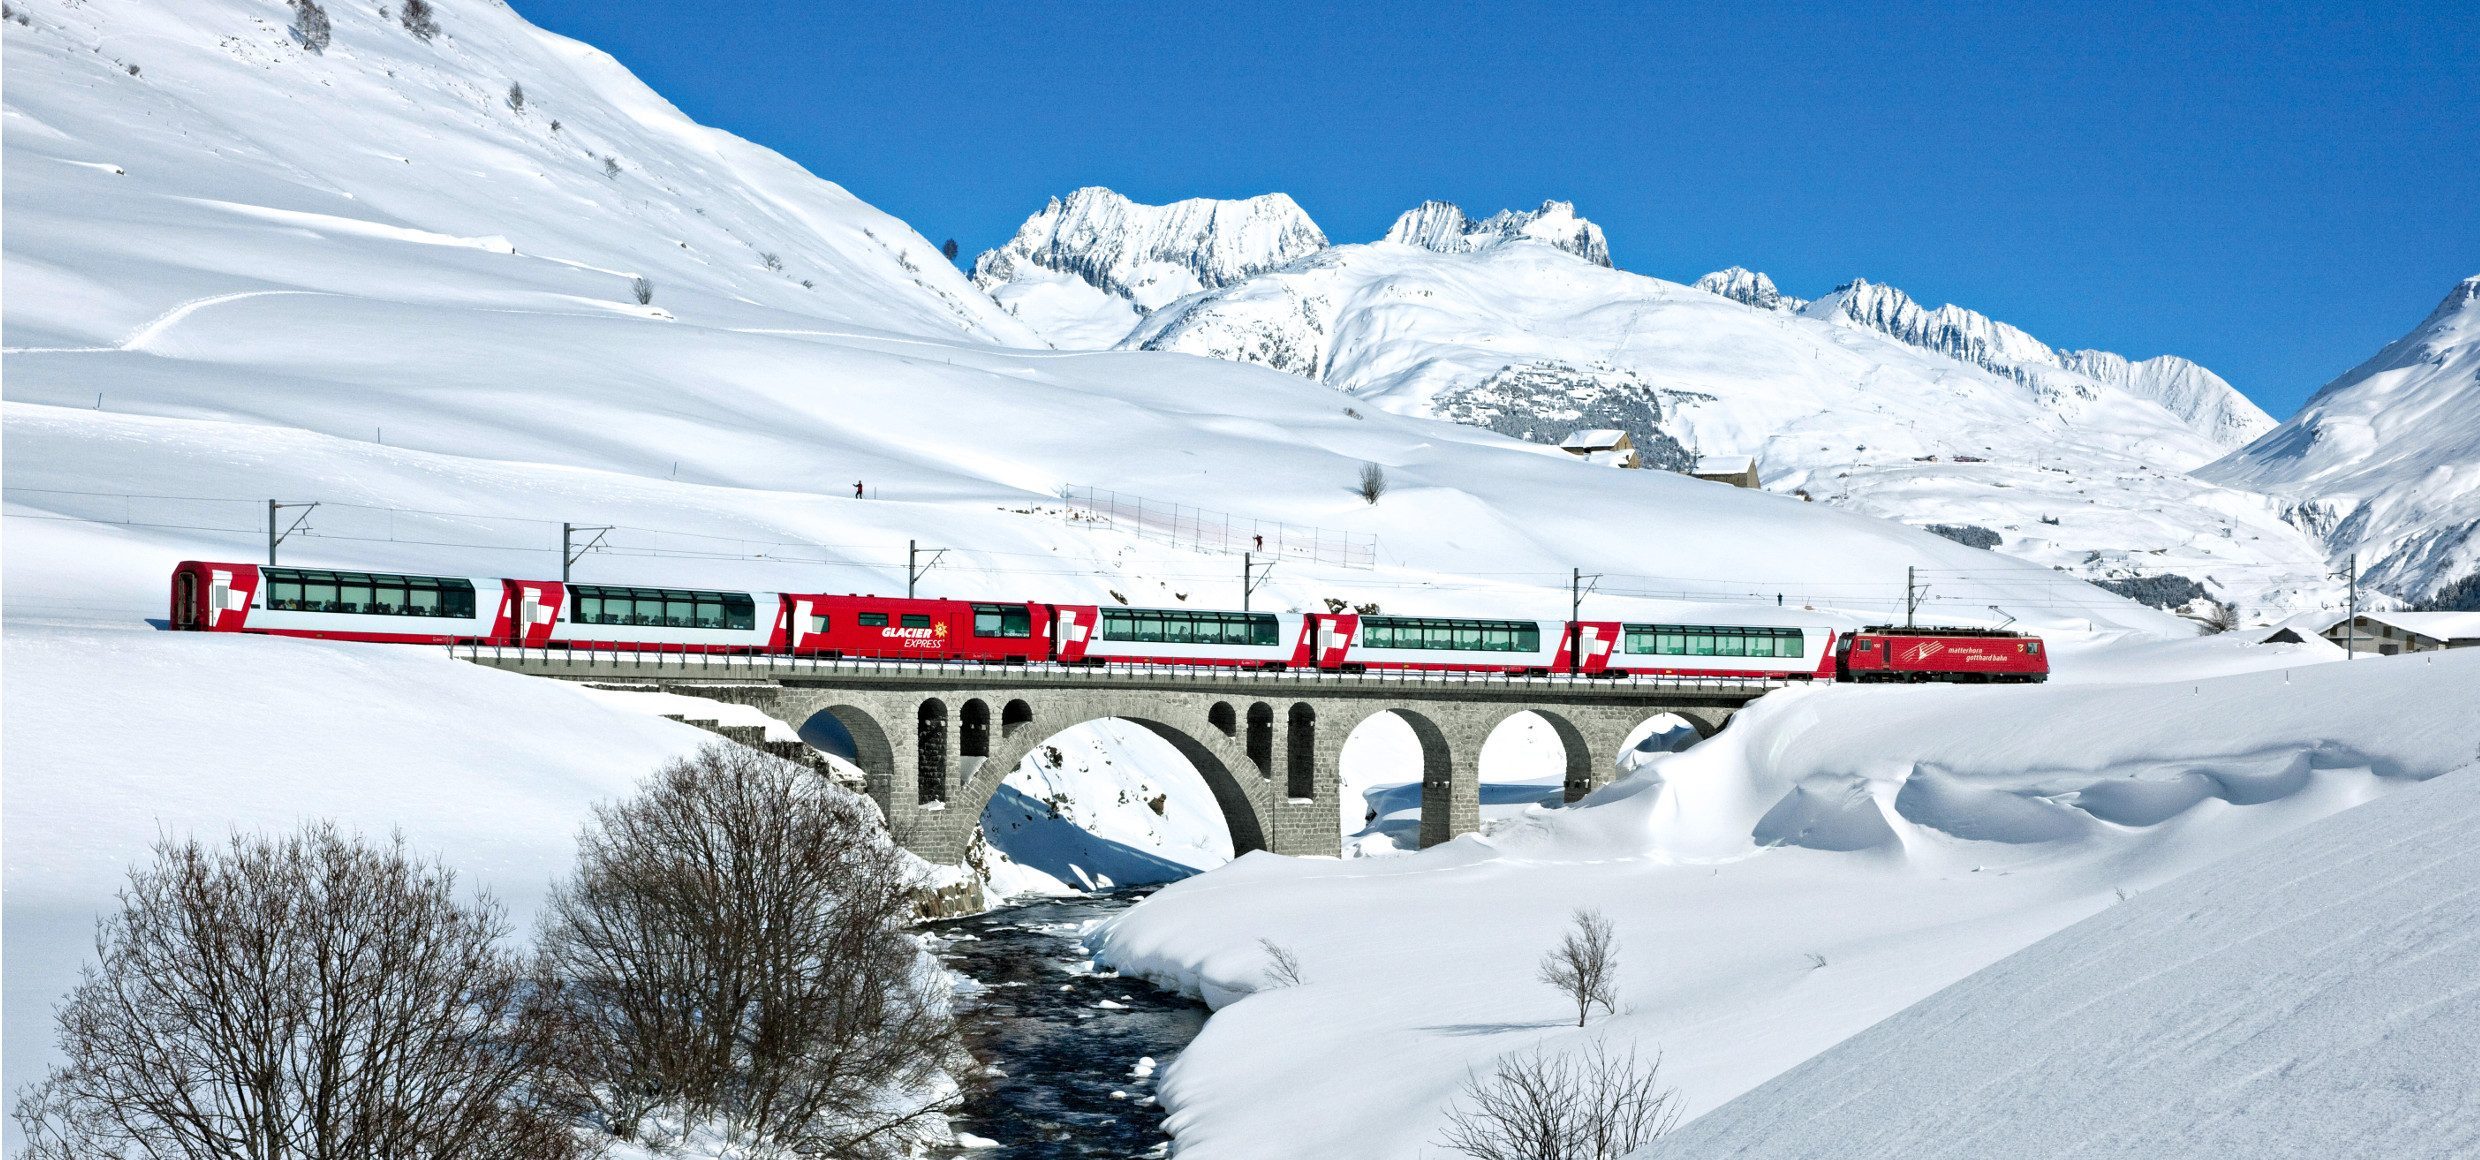 Schweiz_Glacier Express_01_(c)Switzerland Tourism